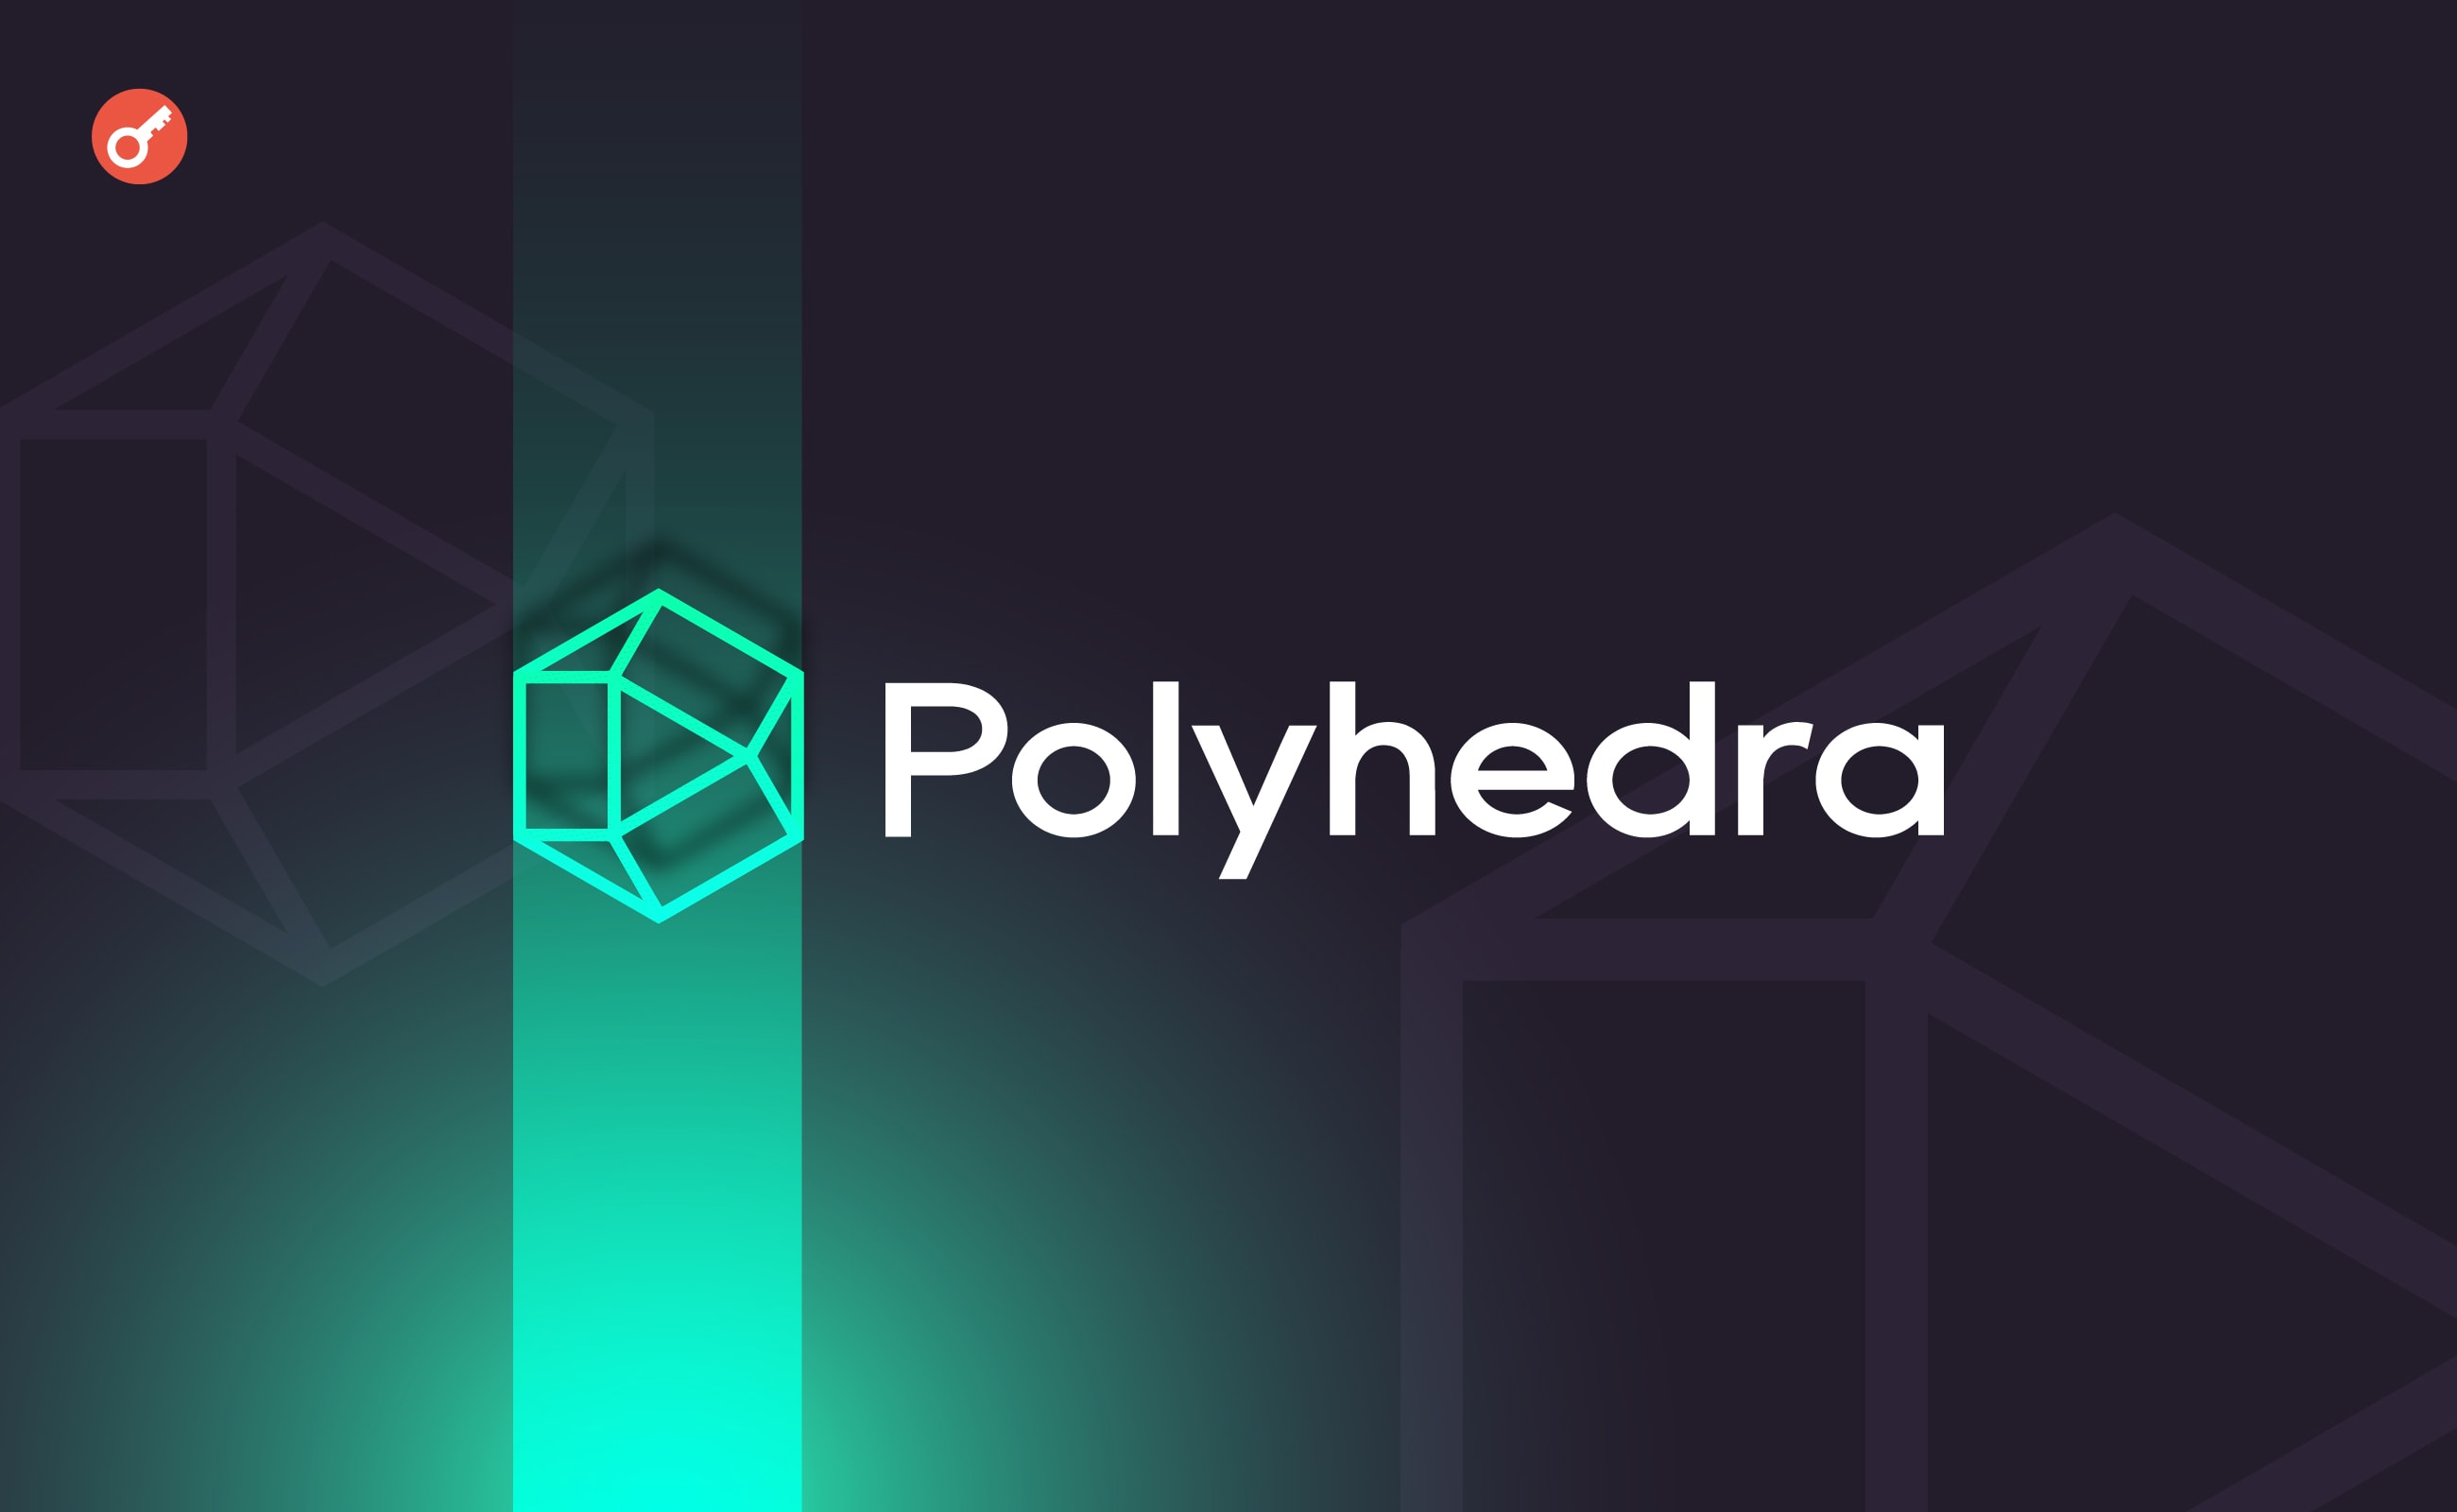 Команда Polyhedra Network обвинила zkSync в краже тикера токена. Заглавный коллаж новости.